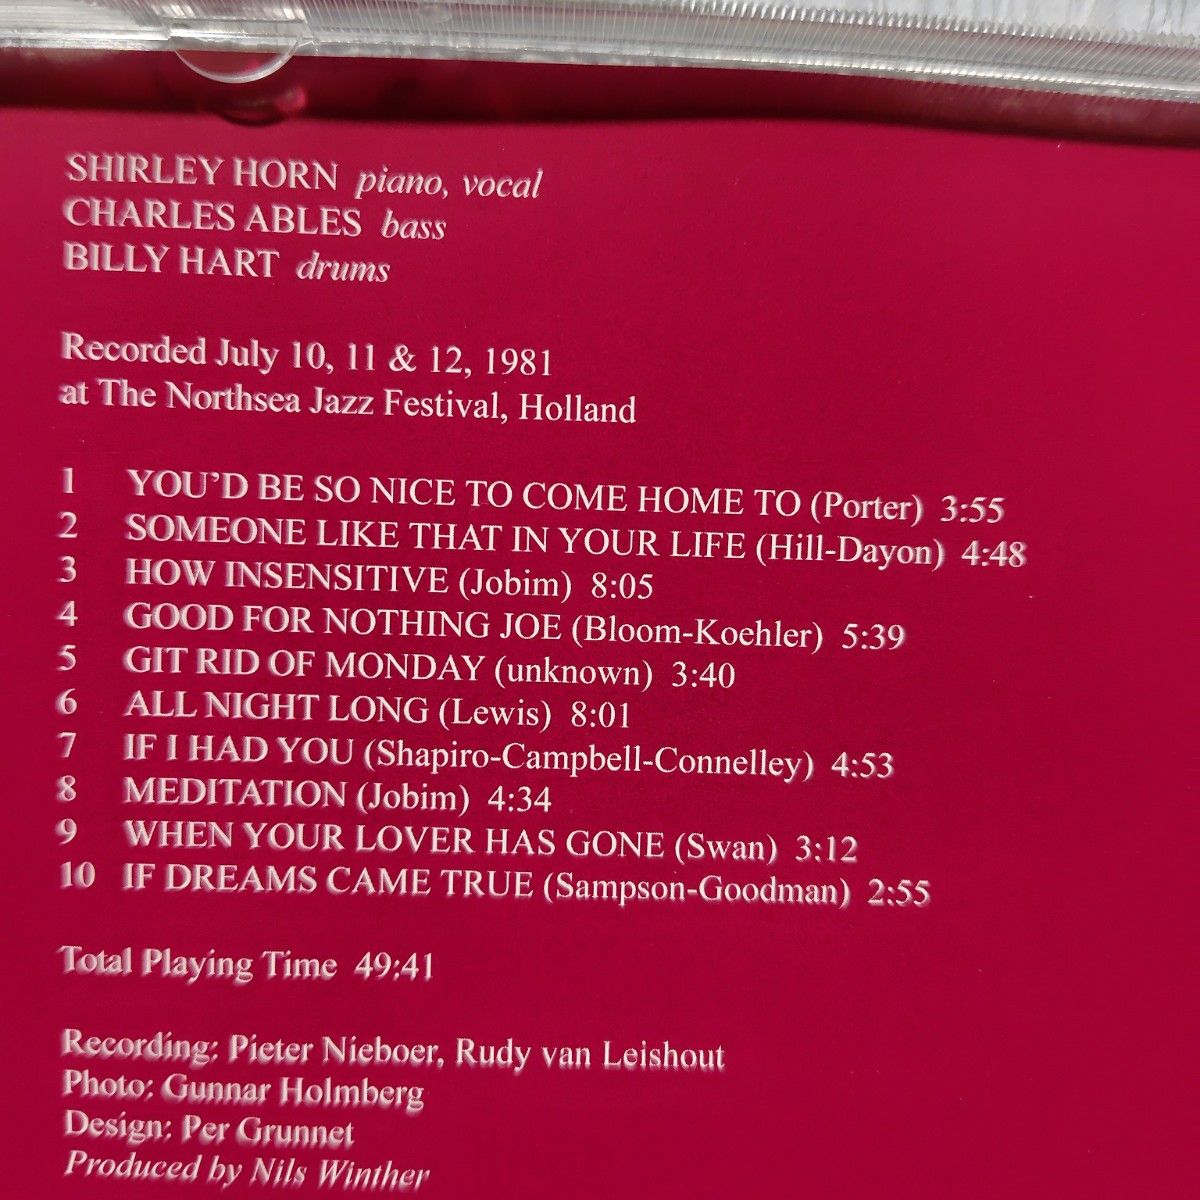 シャーリー・ホーン/オール・ナイト・ロング SHIRLEY HORN / ALL NIGHT LONG【CD】